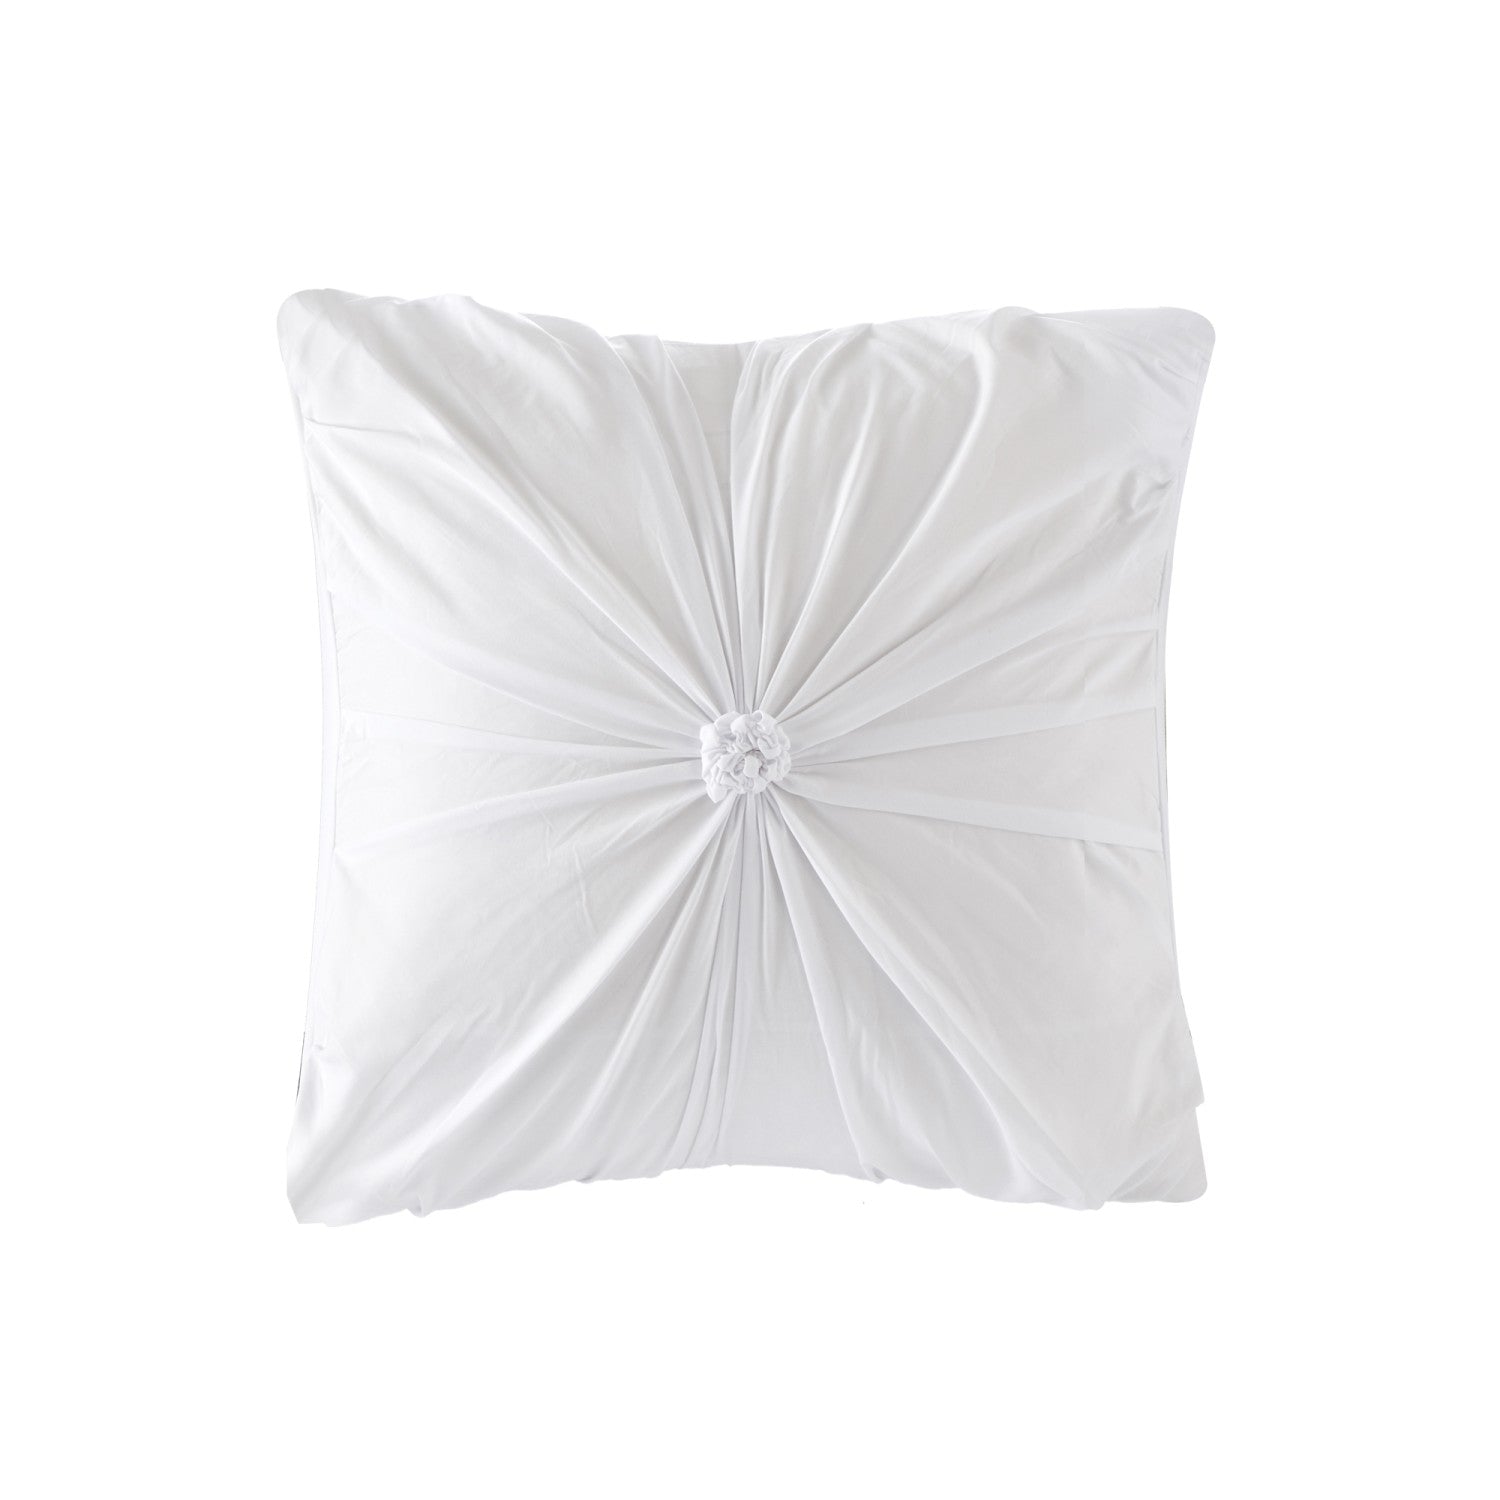 Lilyanna Modern Comforter Set 2 Pillow Shams, 2 Euro Shams, 1 Comforter ...